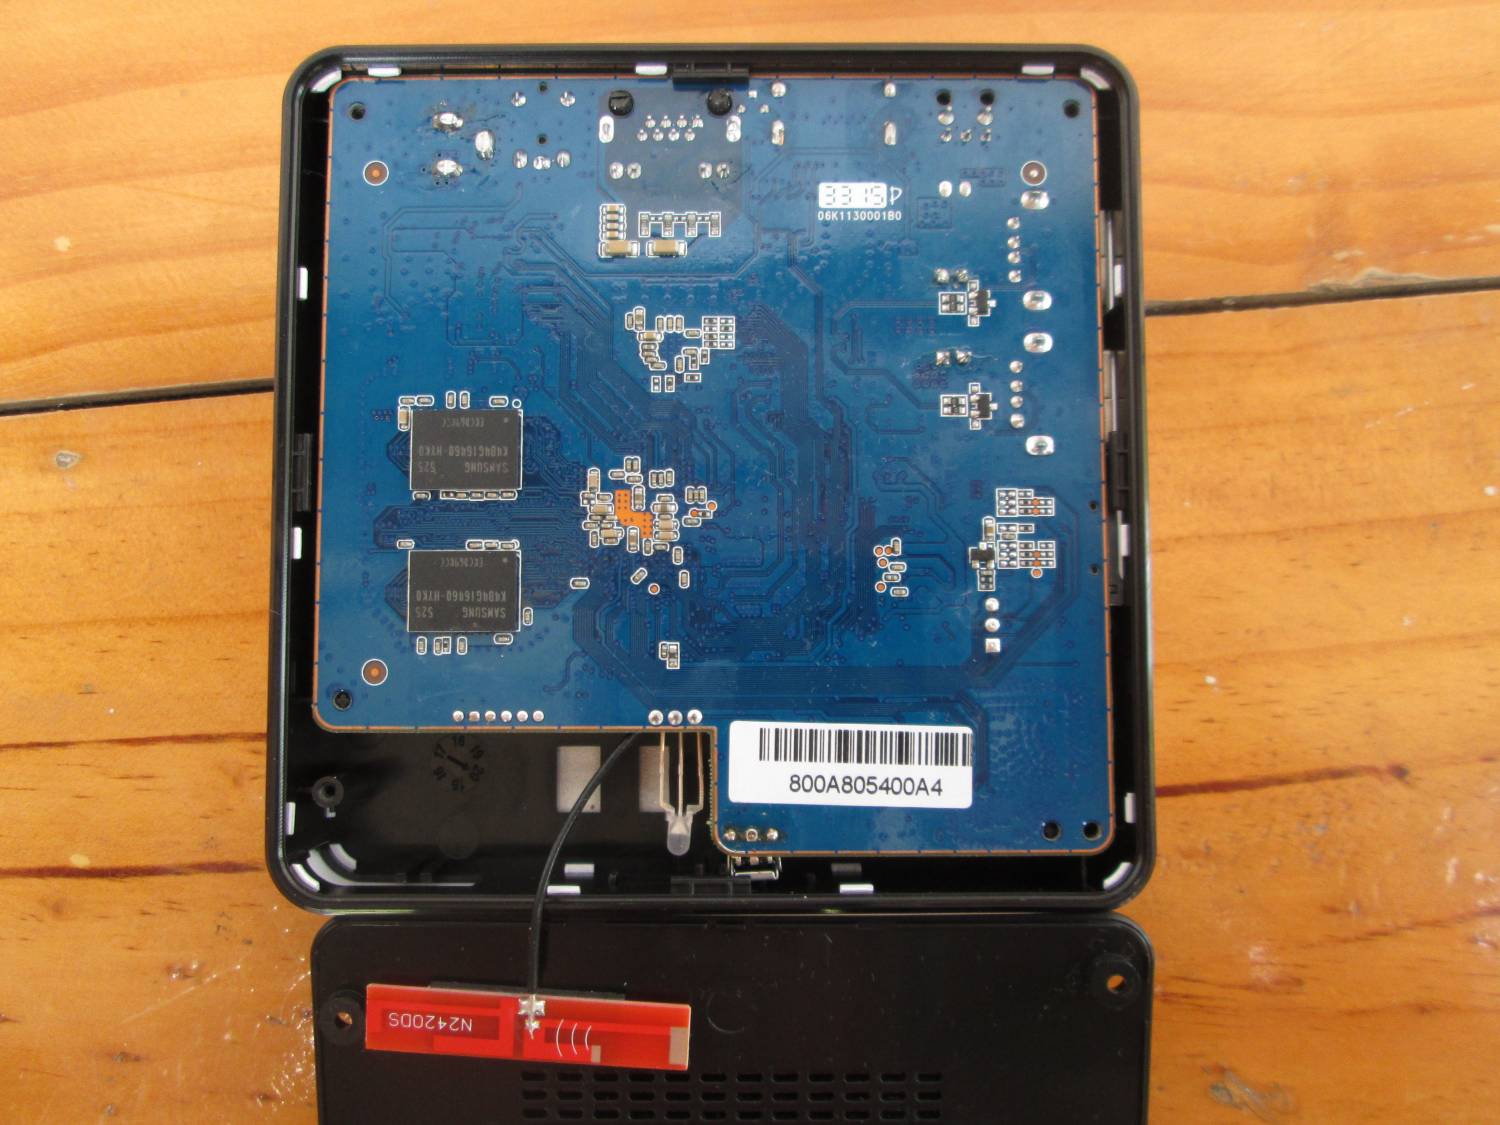 TomTop: IP TV-Box Zidoo X6 Pro – мал, да удал